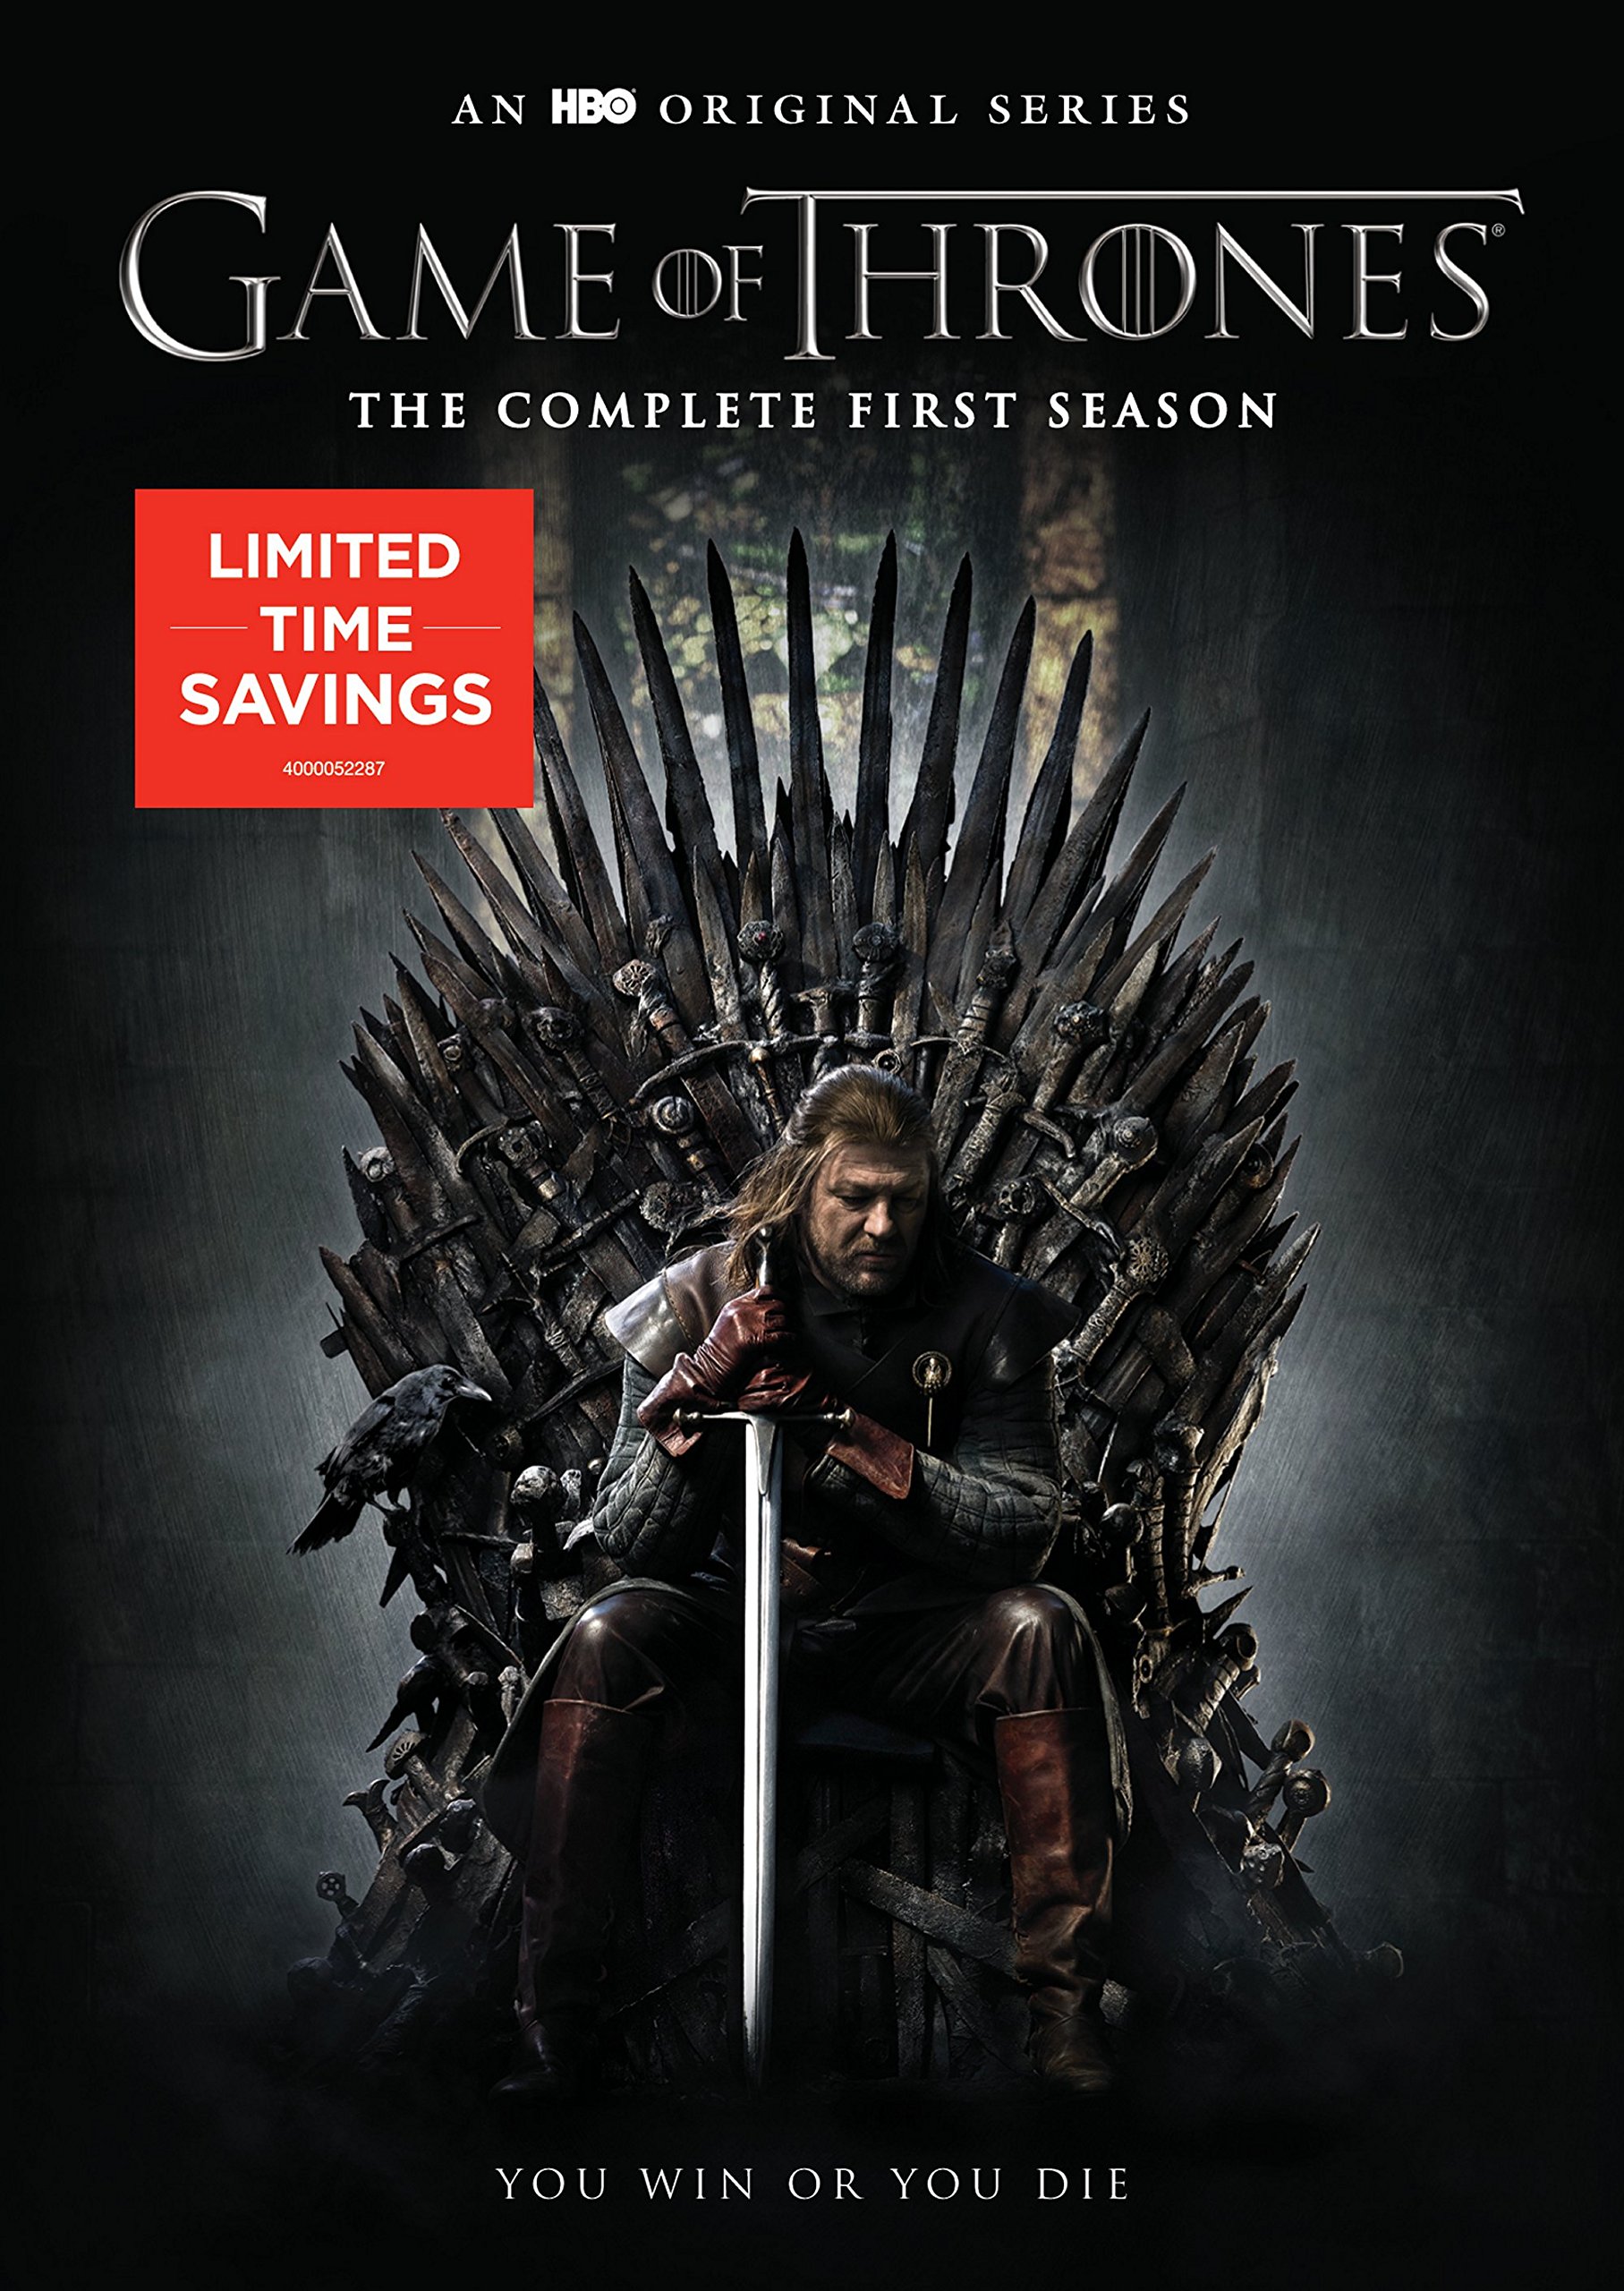 of Thrones DVD Release